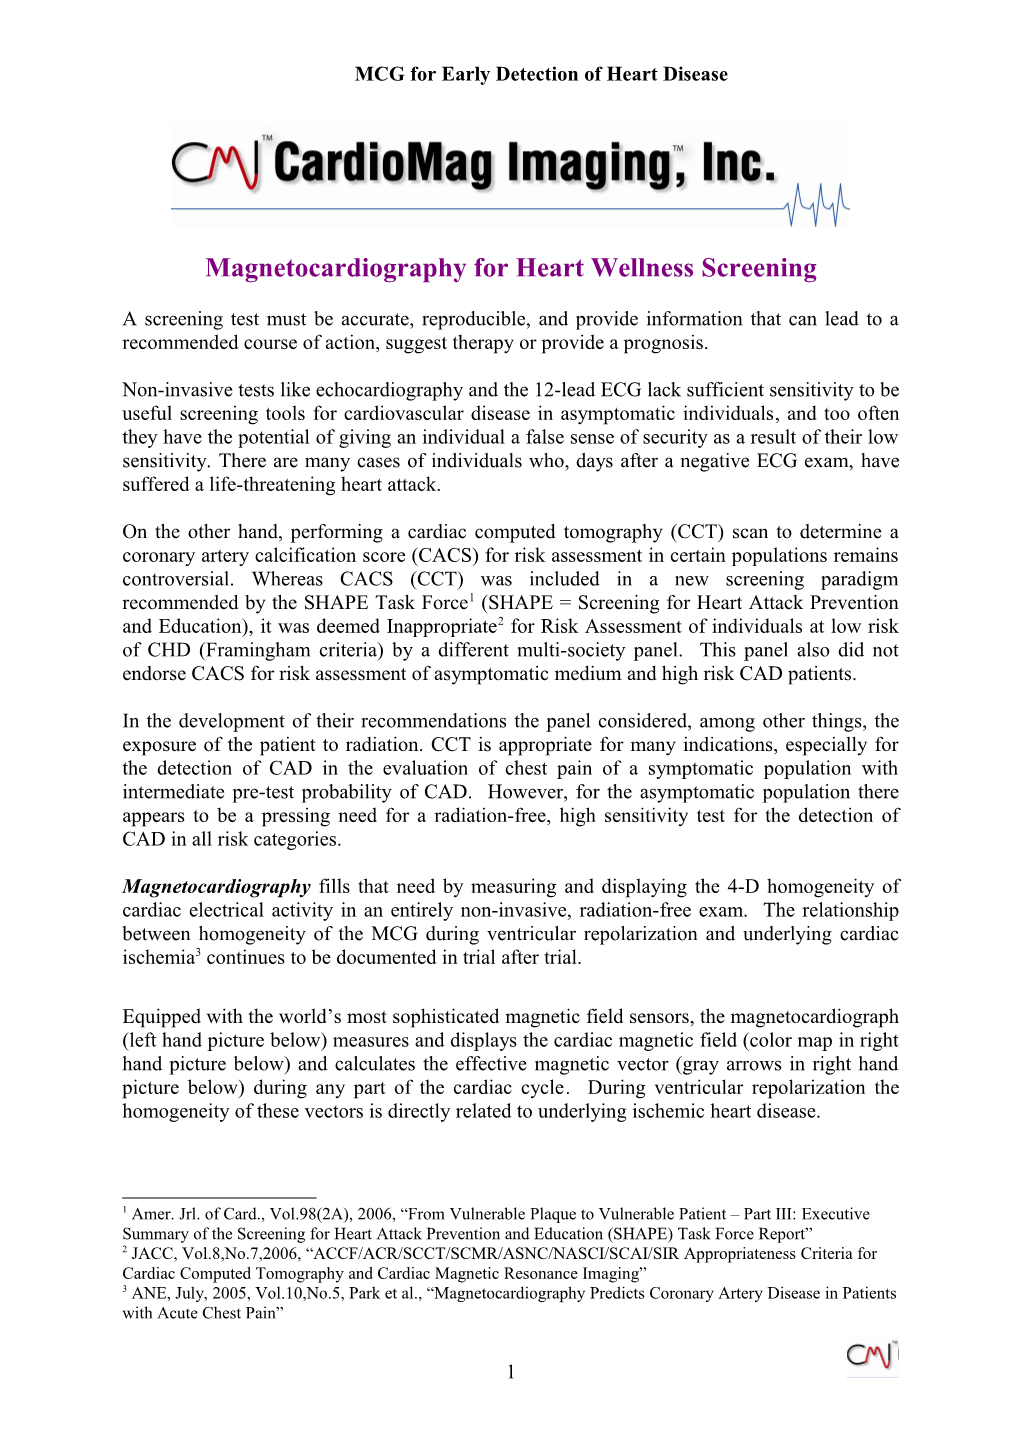 Cardiomag Imaging, Inc